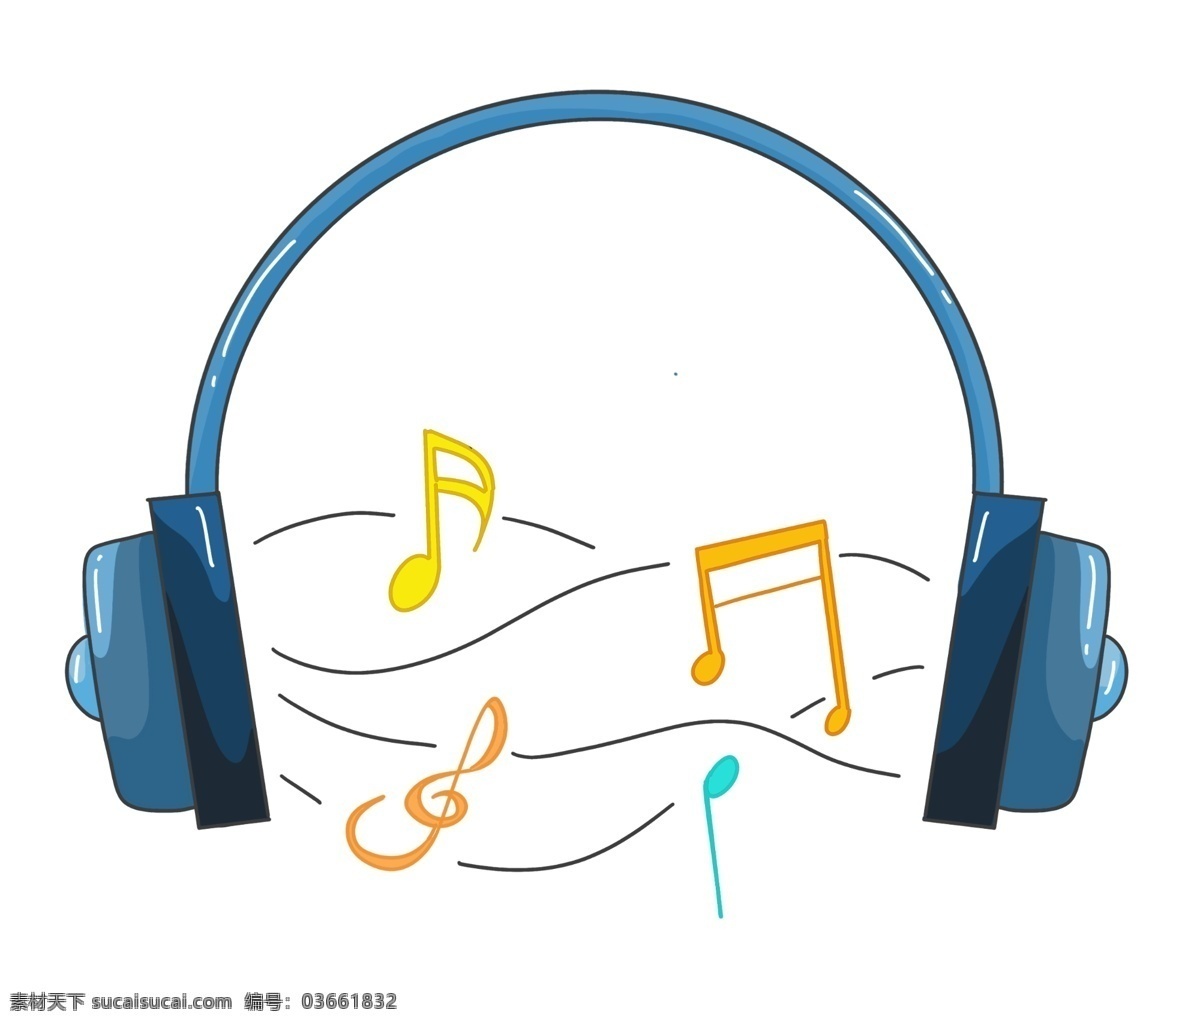 音乐 耳机 音符 插图 黄色音符 音乐耳机 蓝色音乐耳机 听音乐的耳机 音符插图 唱歌 优美的音乐